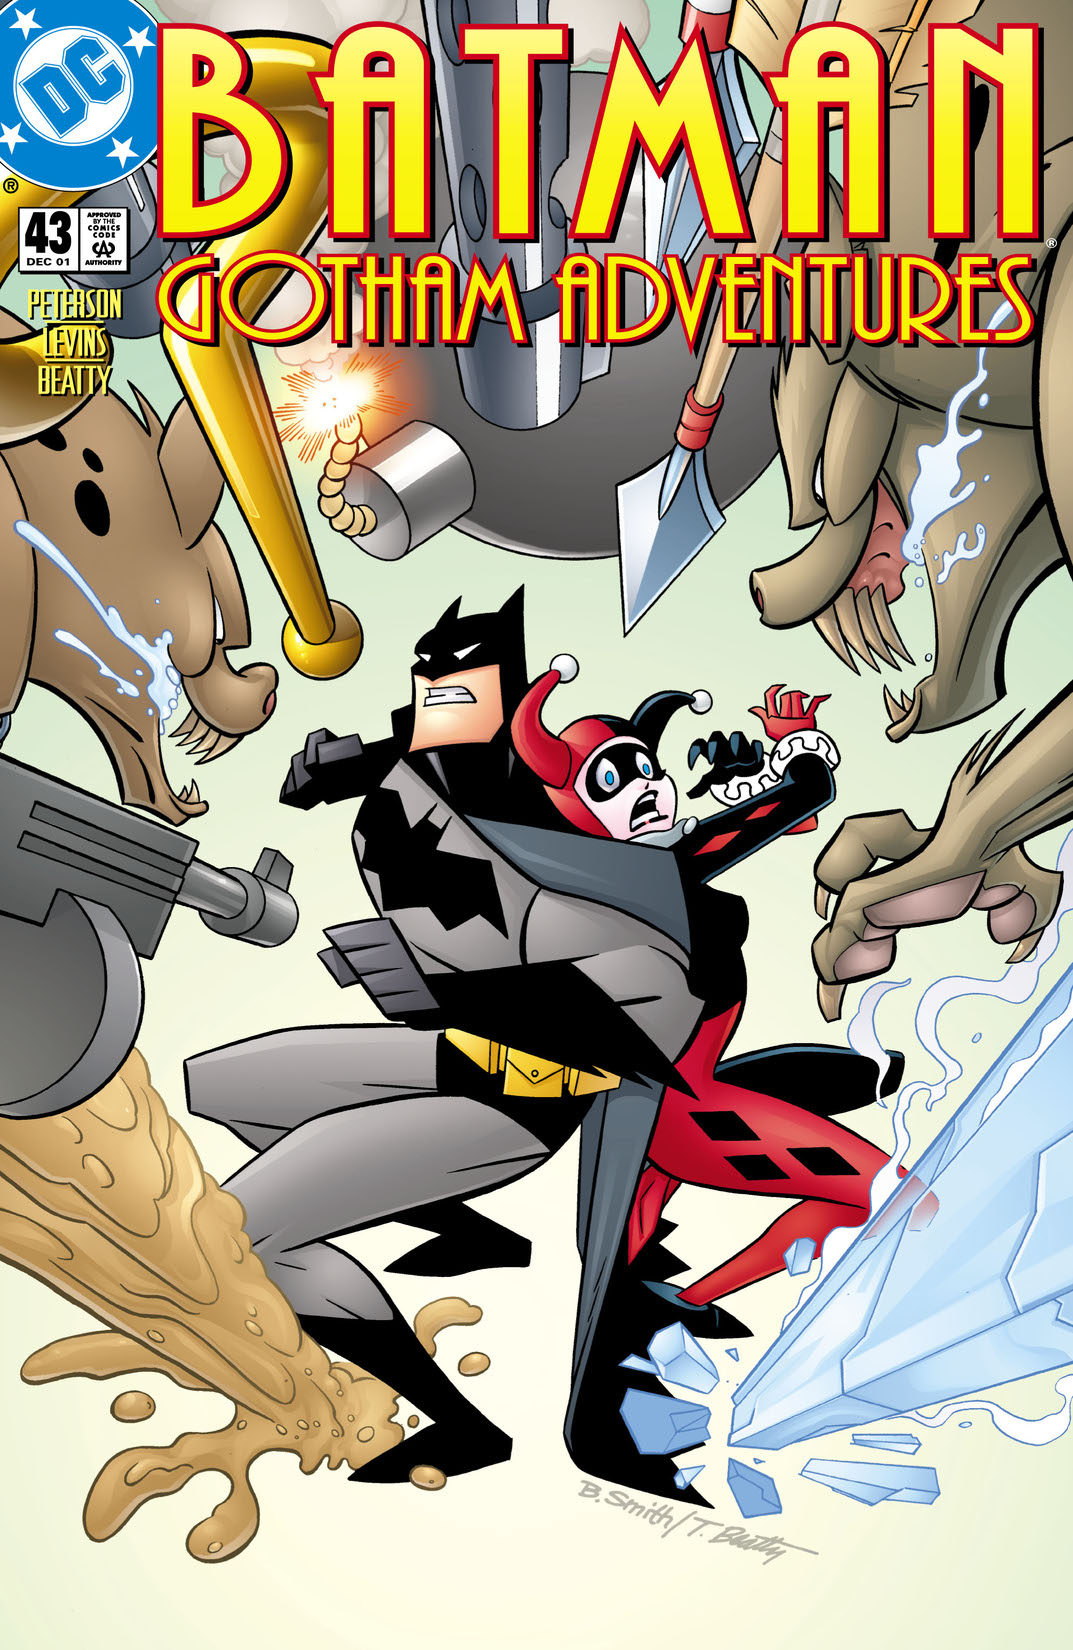 Batman: Gotham Adventures #43 preview images